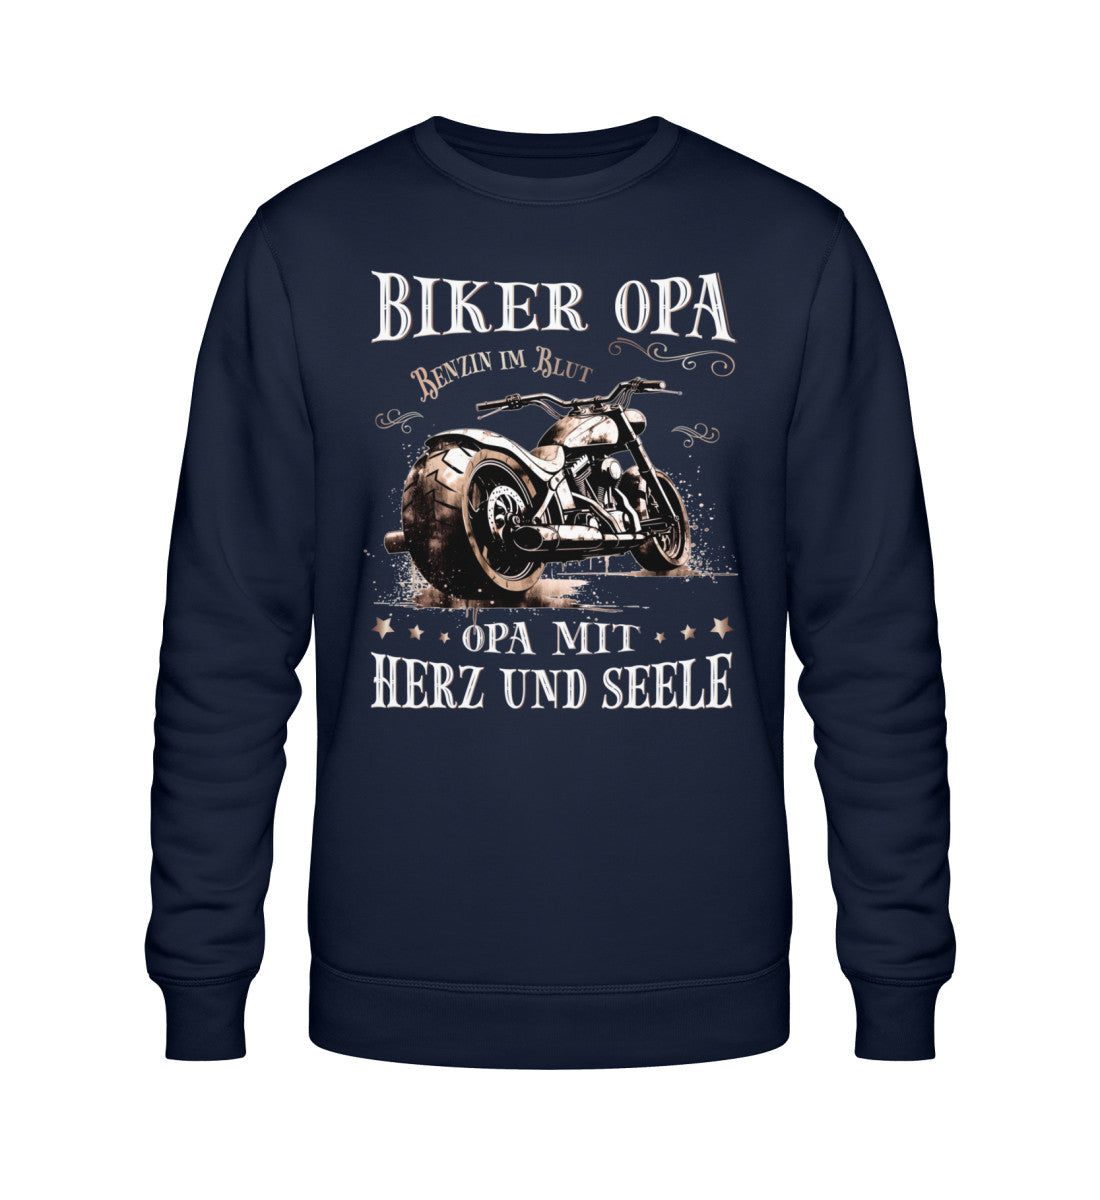 Ein Biker Sweatshirt für Motorradfahrer von Wingbikers mit dem Aufdruck, Biker Opa - Benzin im Blut - Opa mit Herz und Seele, in navy blau.